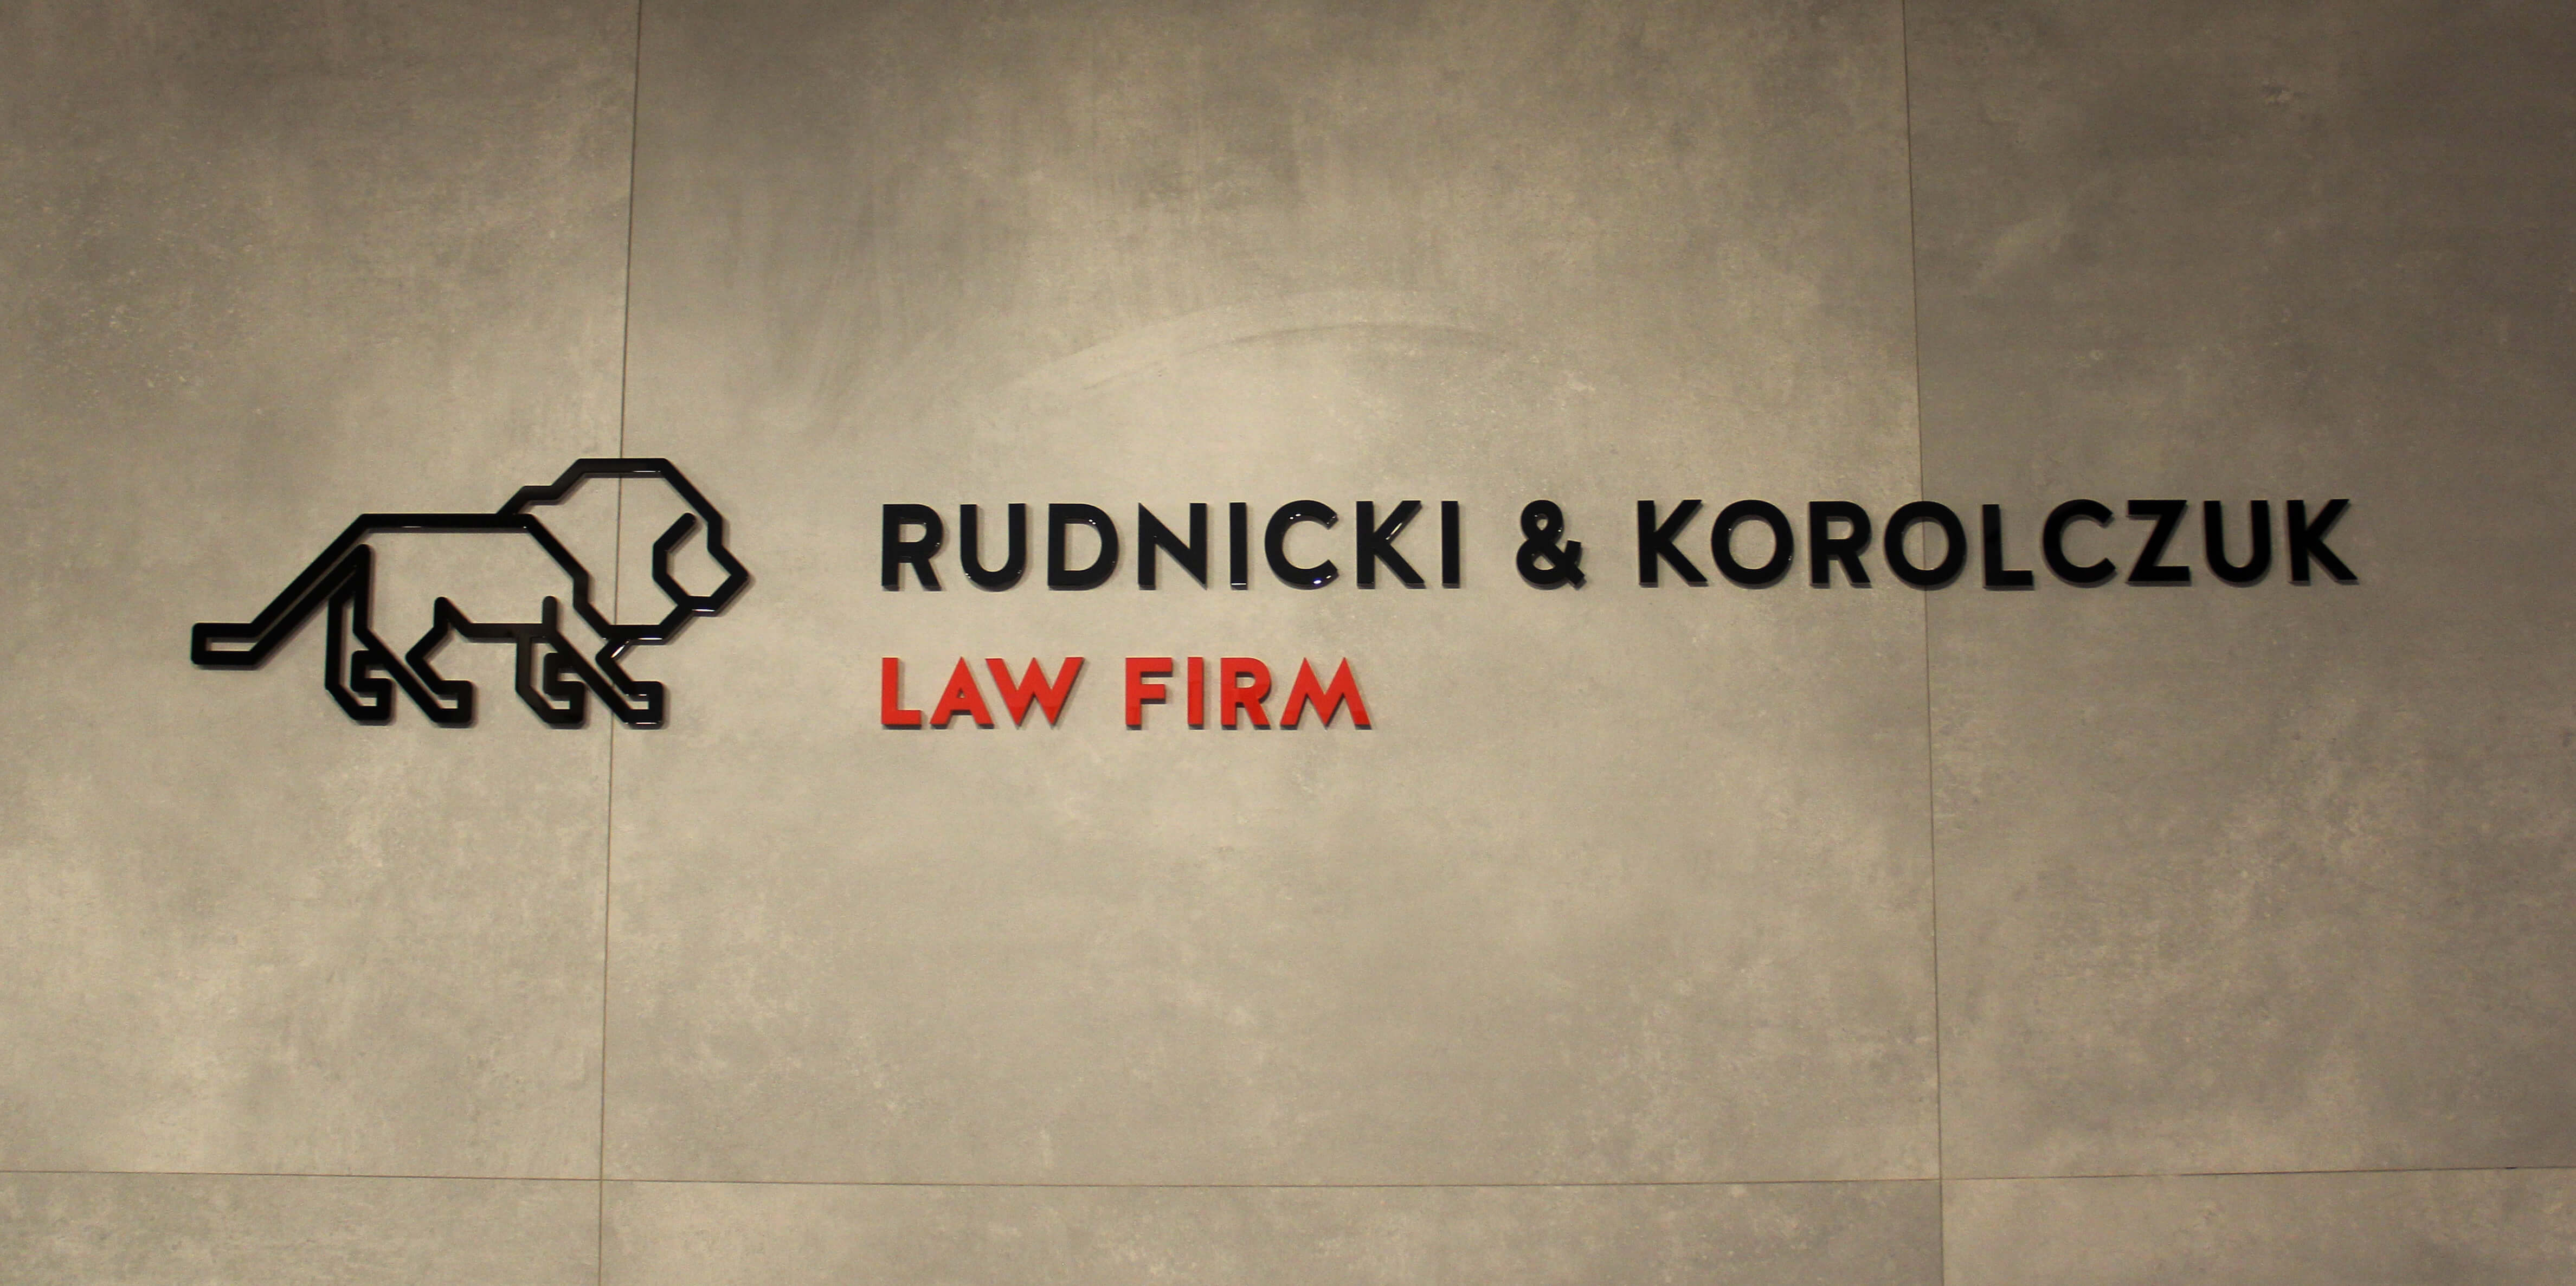 Rudnicki & Korolczuk - Rudnicki i Korolczuk - logo e lettere 3D in plexiglass sulla parete interna dell'edificio